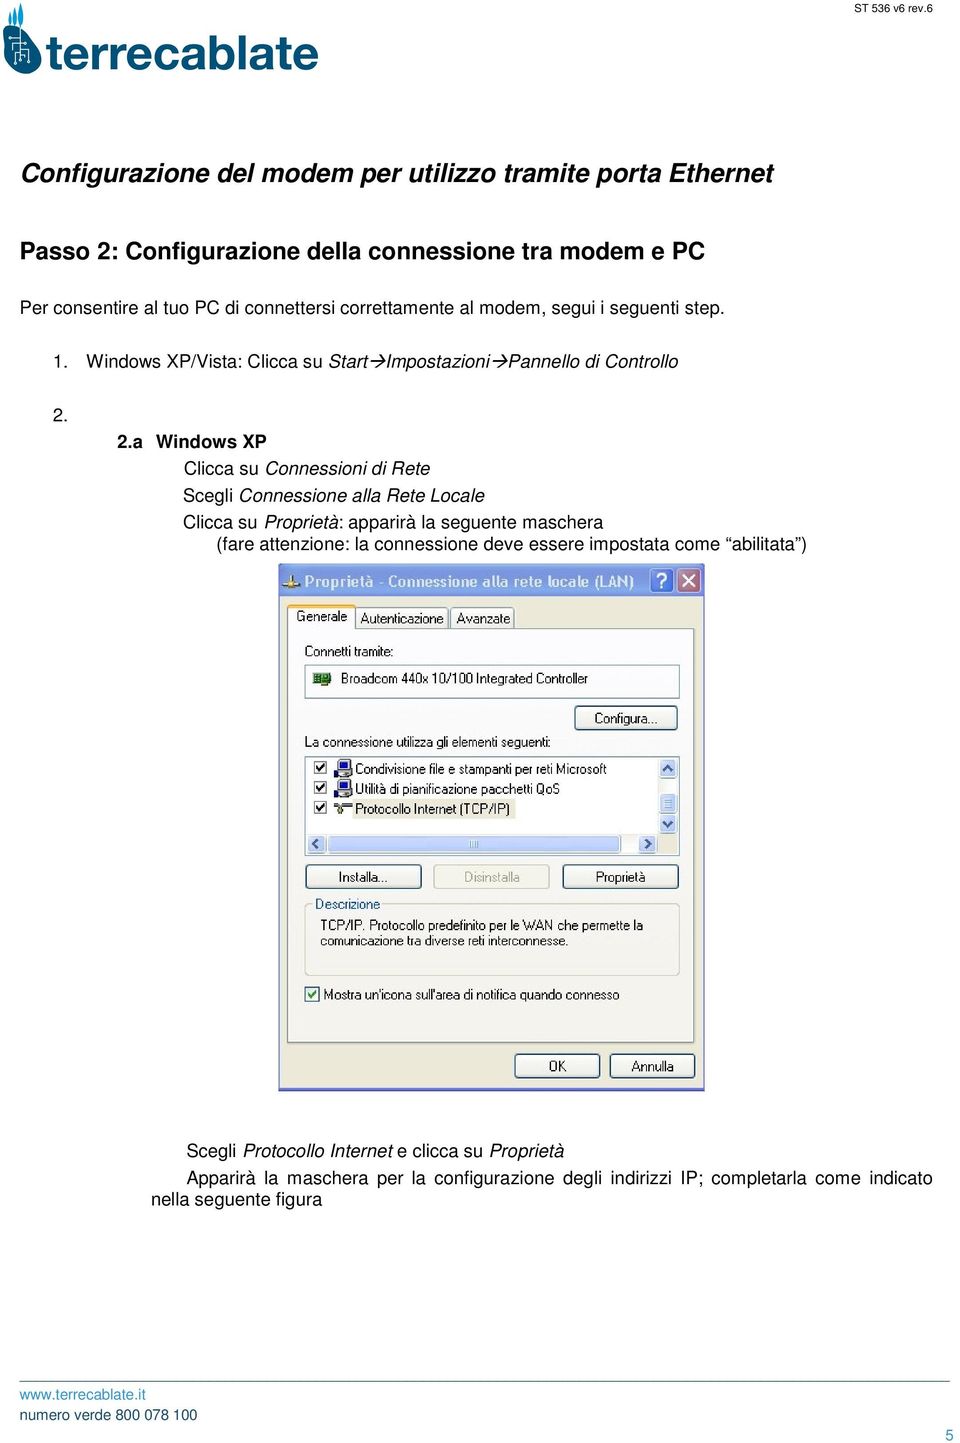 2.a Windows XP Clicca su Connessioni di Rete Scegli Connessione alla Rete Locale Clicca su Proprietà: apparirà la seguente maschera (fare attenzione: la